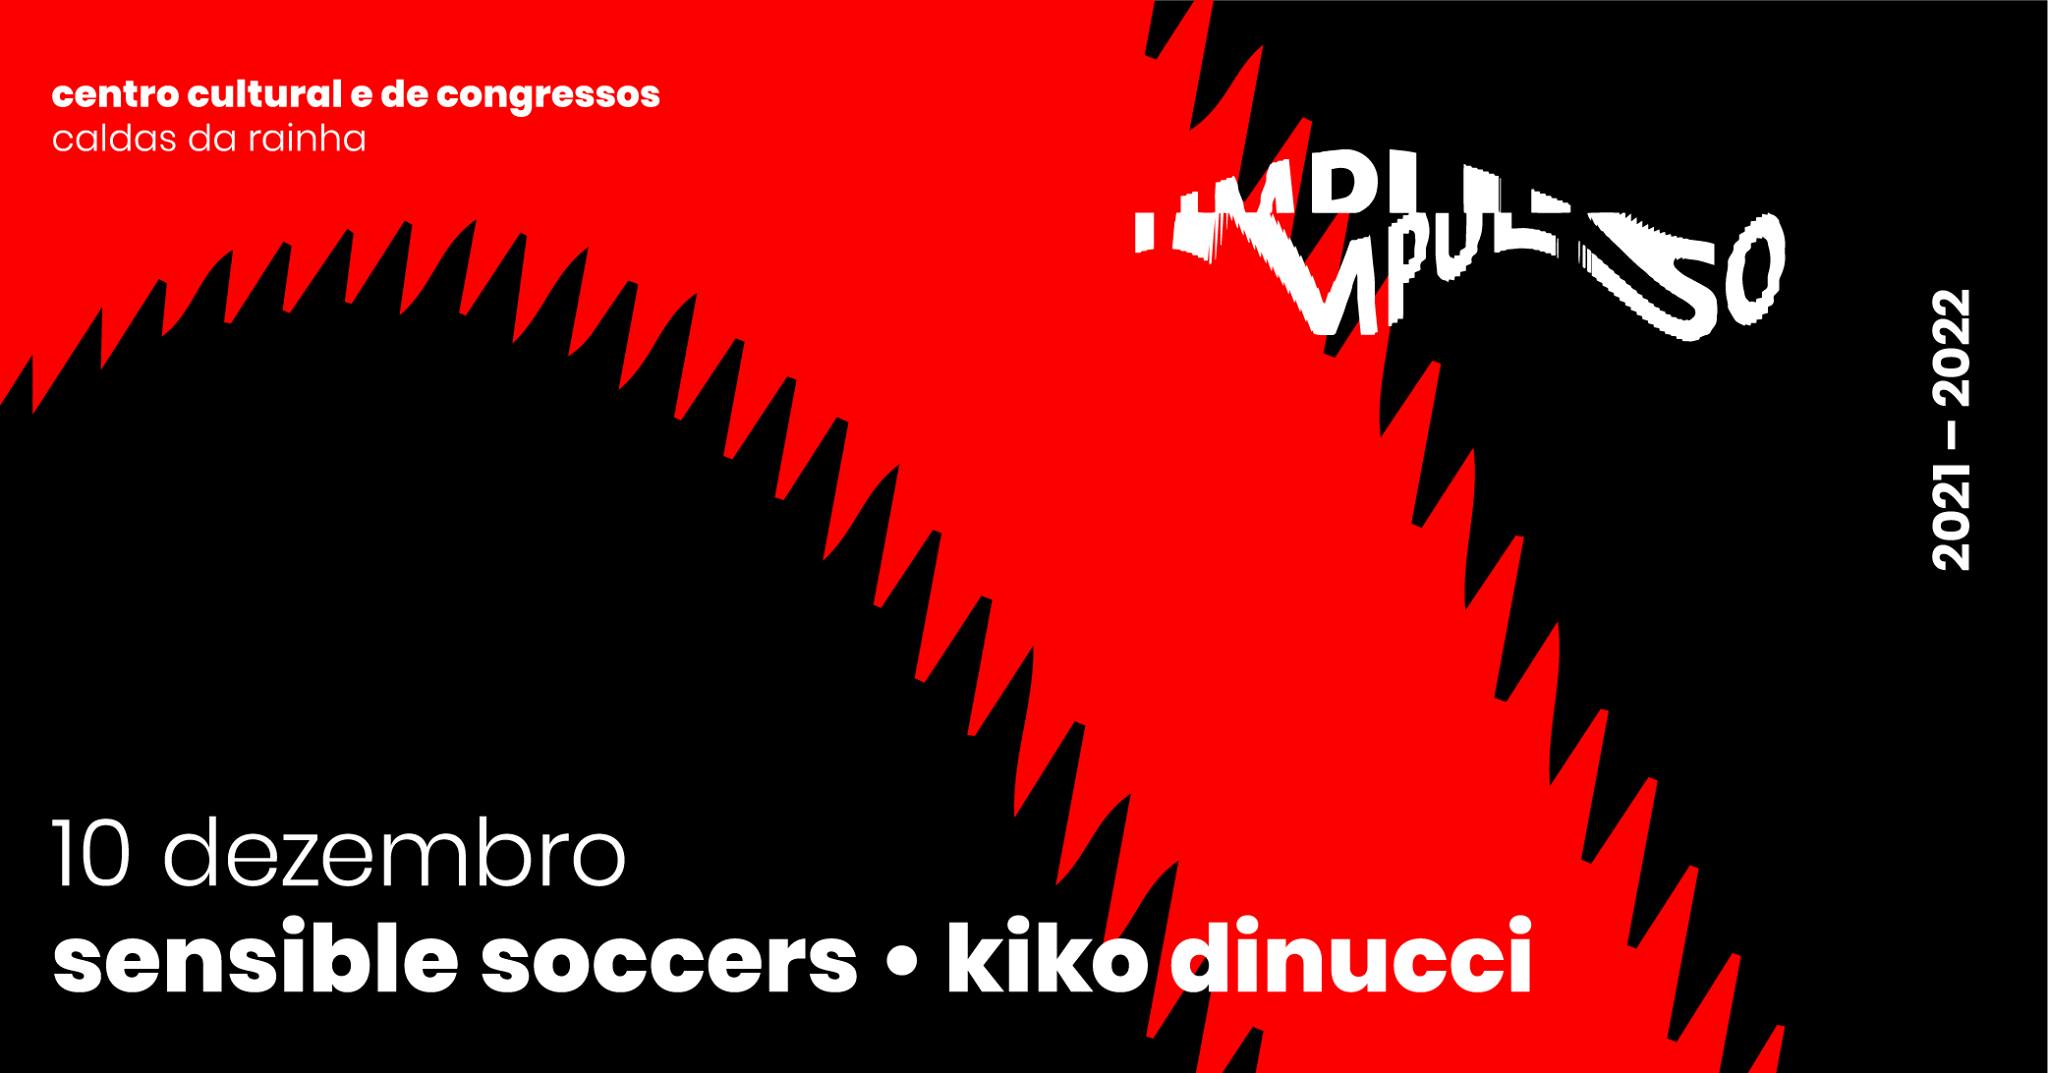 Festival Impulso apresenta Sensible Soccers + Kiko Dinucci